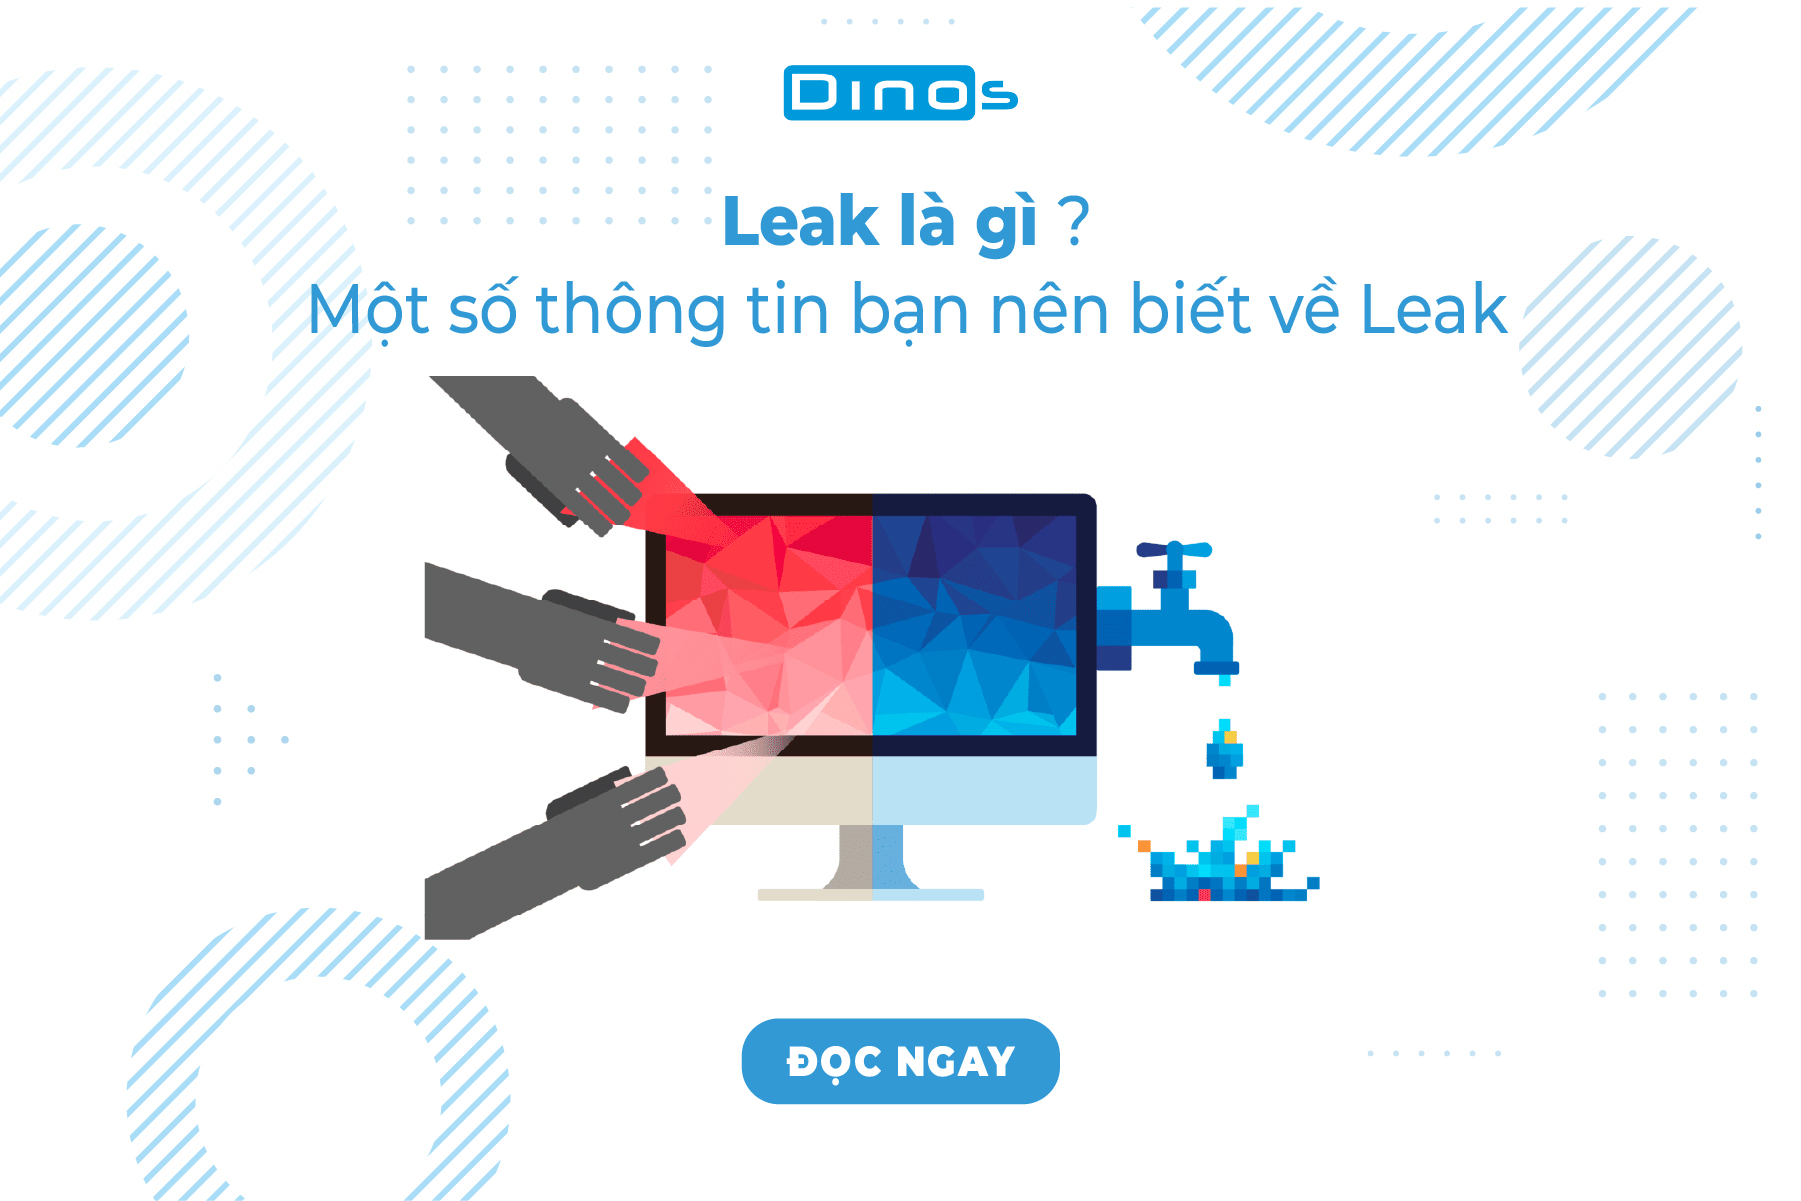 Leak Là Gì? Một Số Thông Tin Bạn Nên Biết Về Leak